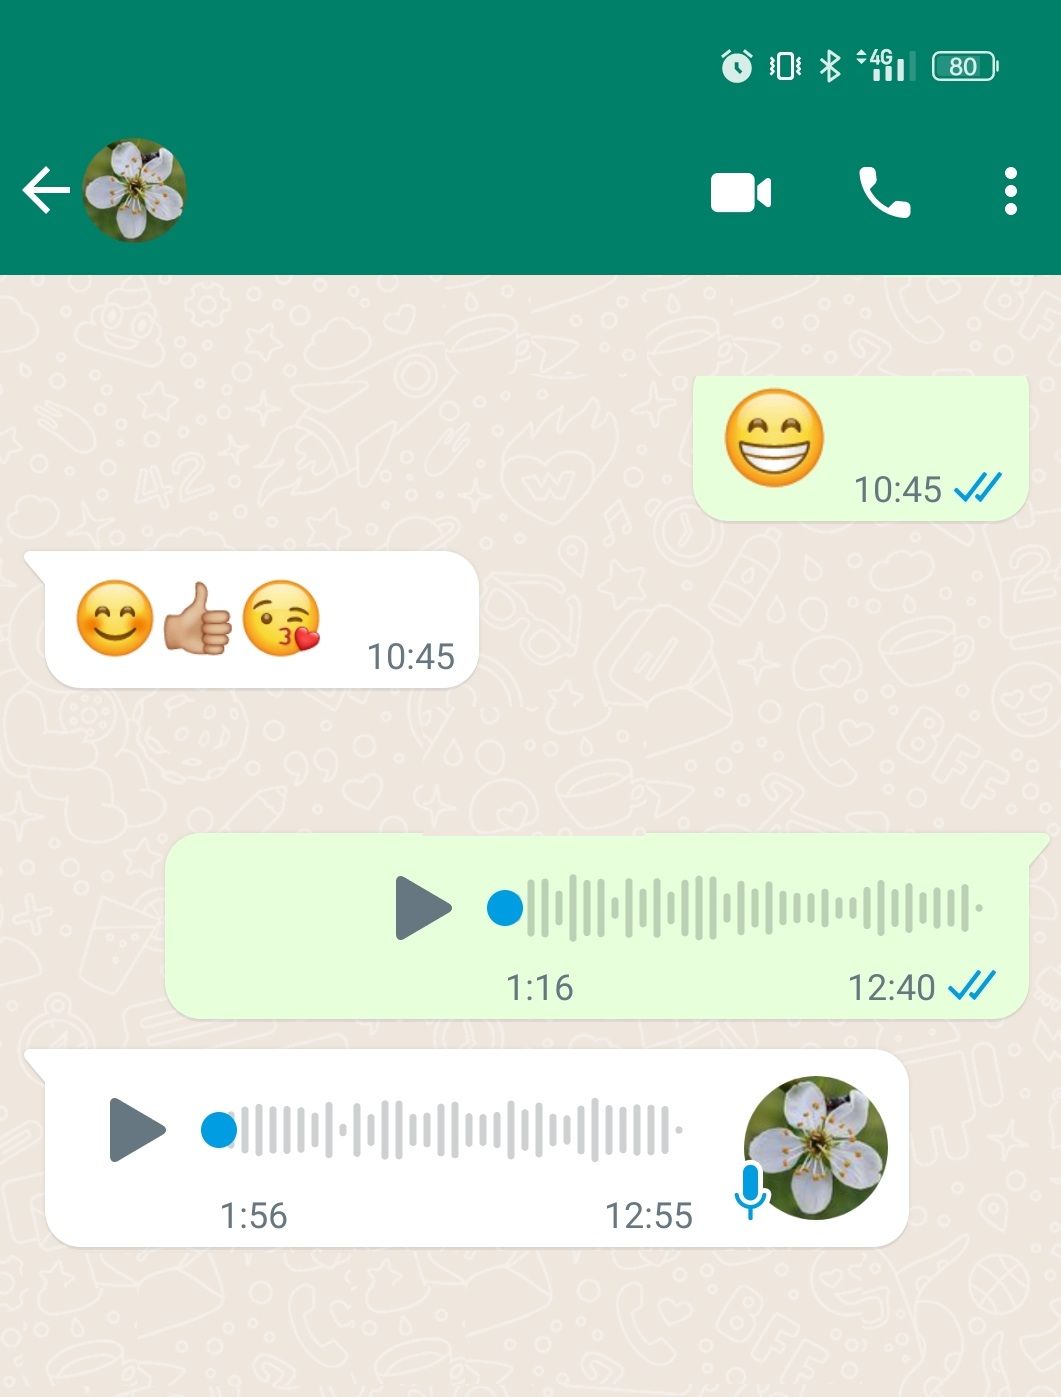 Cómo Hacer Una Videollamada En Whatsapp Techradar 4187